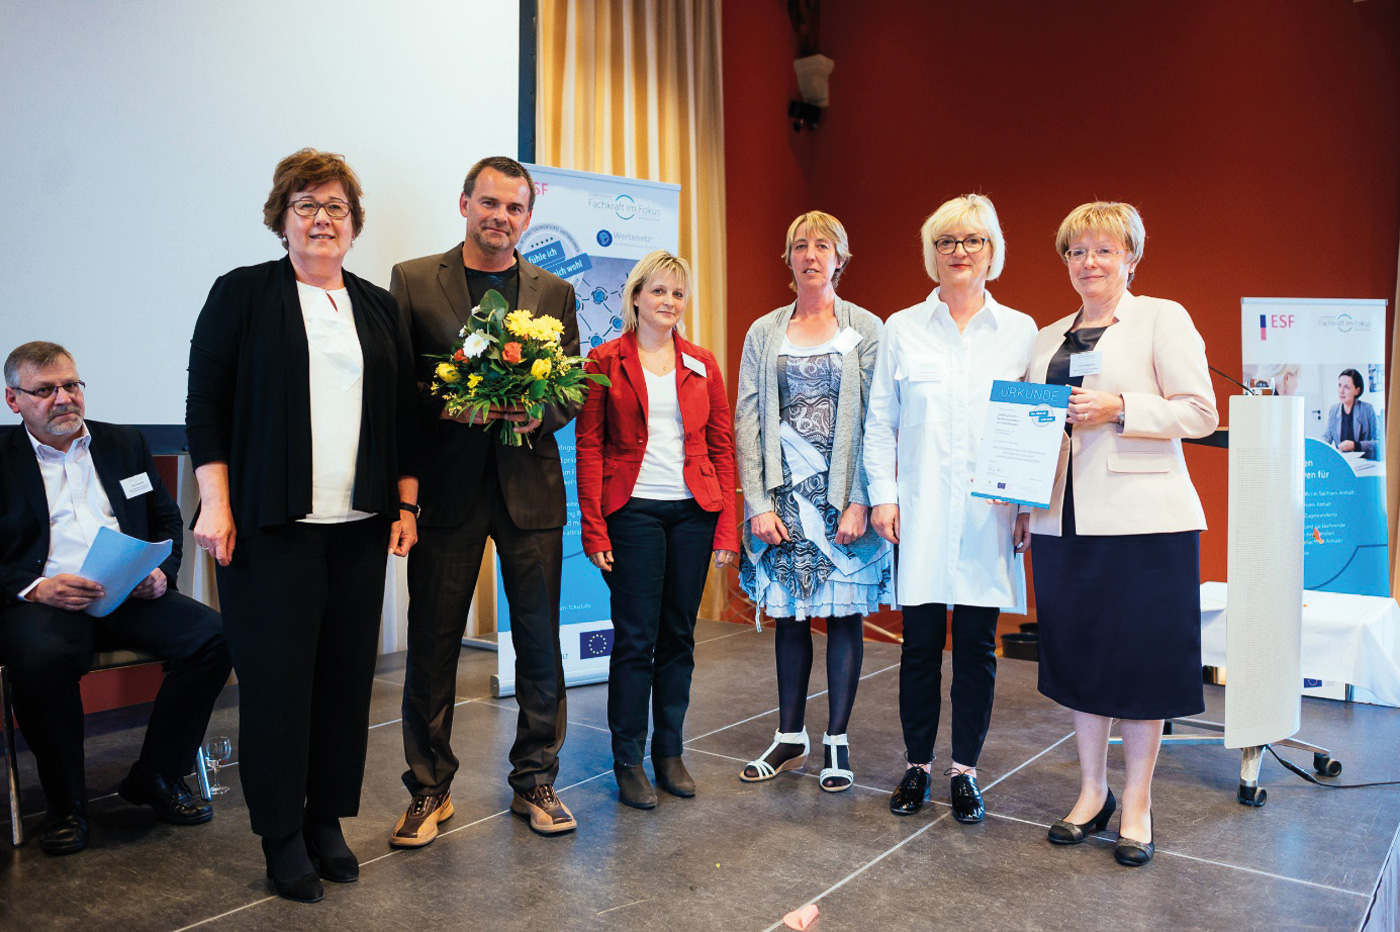 Links steht die Ministerin für Arbeit, Soziales und Integration Sachsen-Anhalt. Rechts neben ihr steht ein Mitarbeiter und 4 Mitarbeiterinnen der habils. Sie haben eine Urkunde und Blumen in er Hand. Alle schauen in die Kamera.